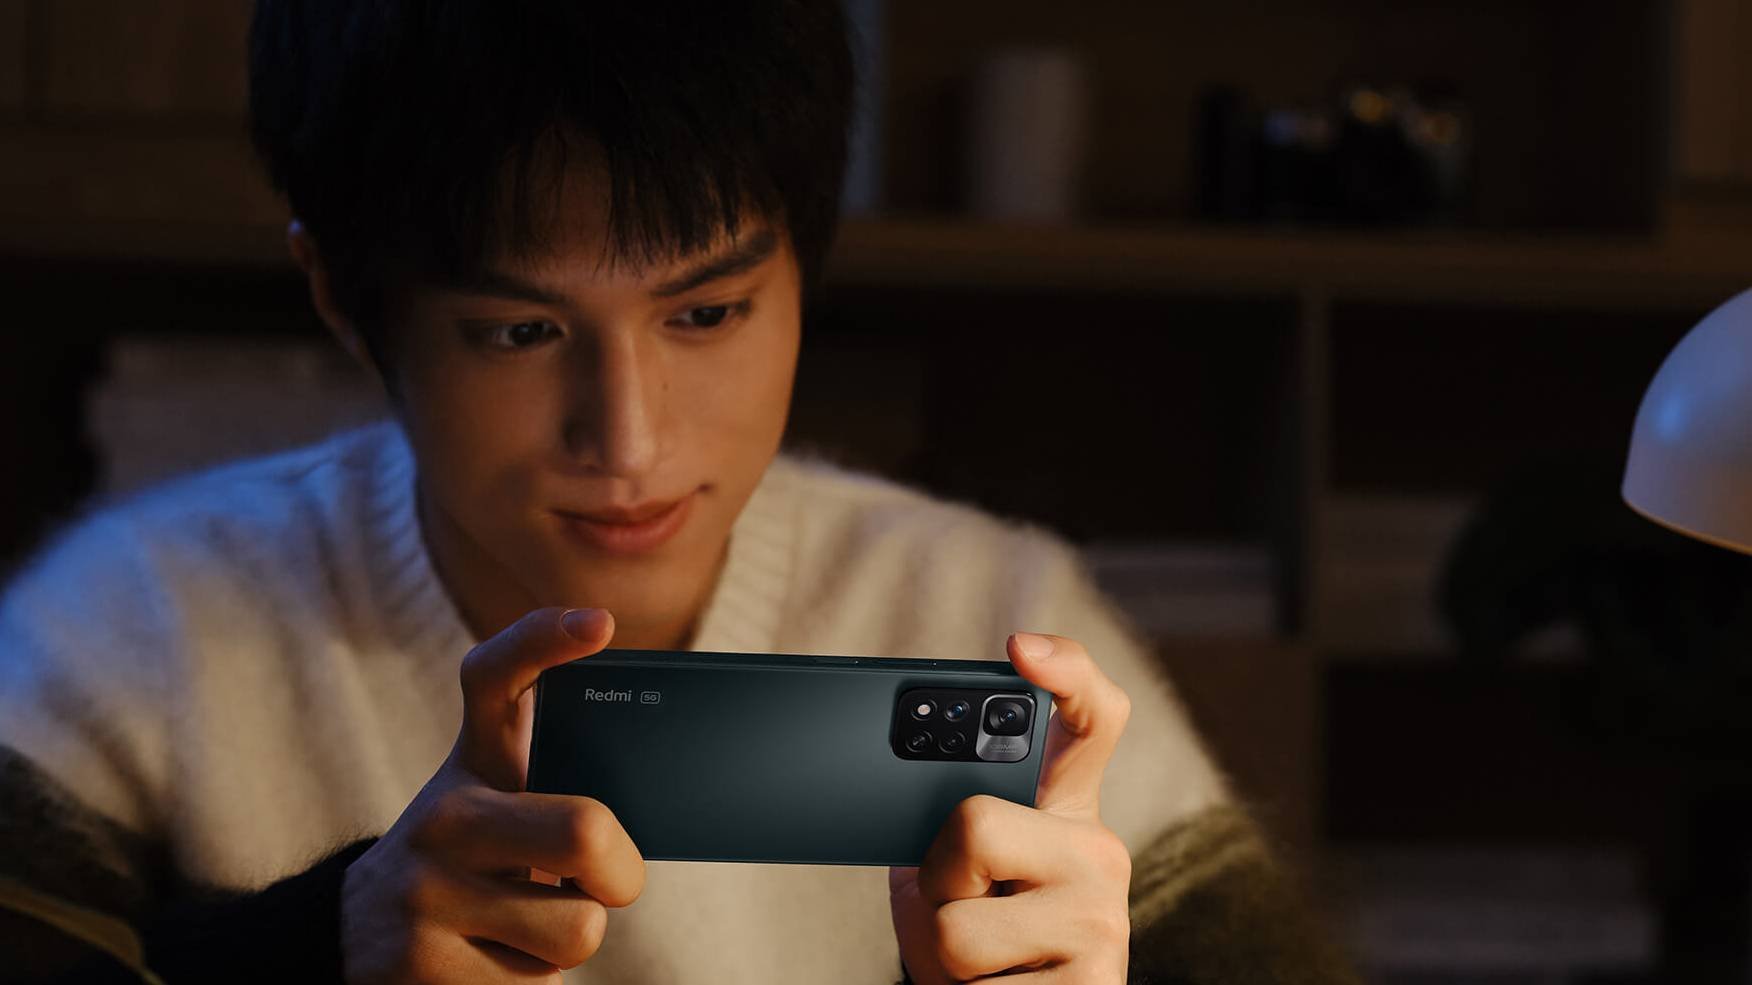 Xiaomi lança Redmi Note 12 com câmera de 200 MP e recarga de 210W - TecMundo